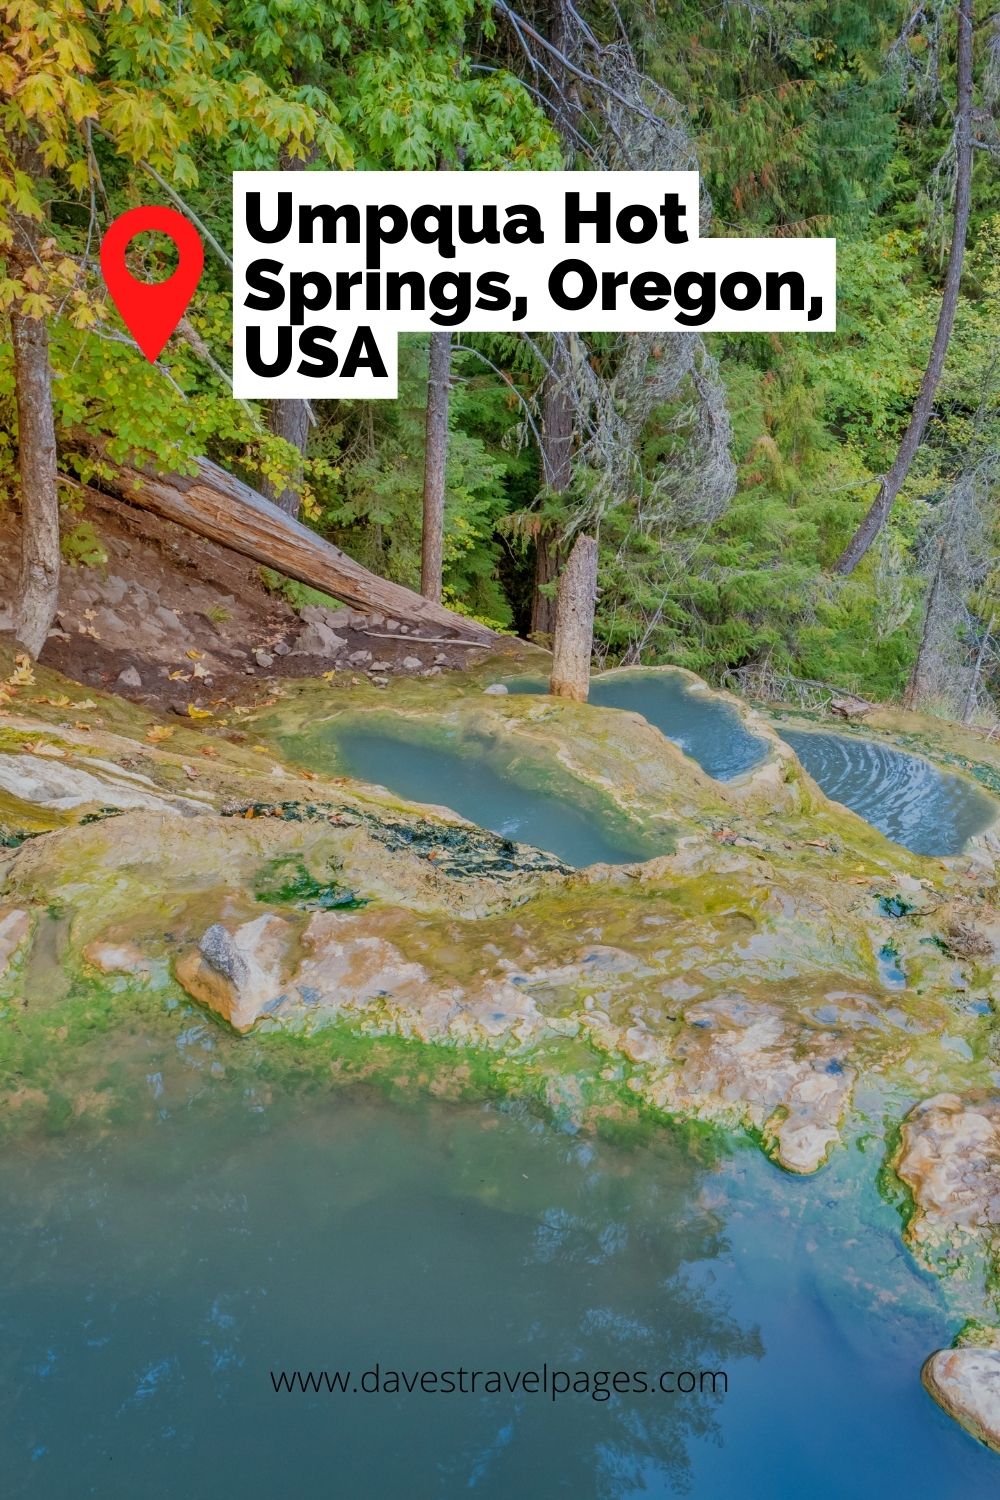 Umpqua Hot Springs, Oregon, USA